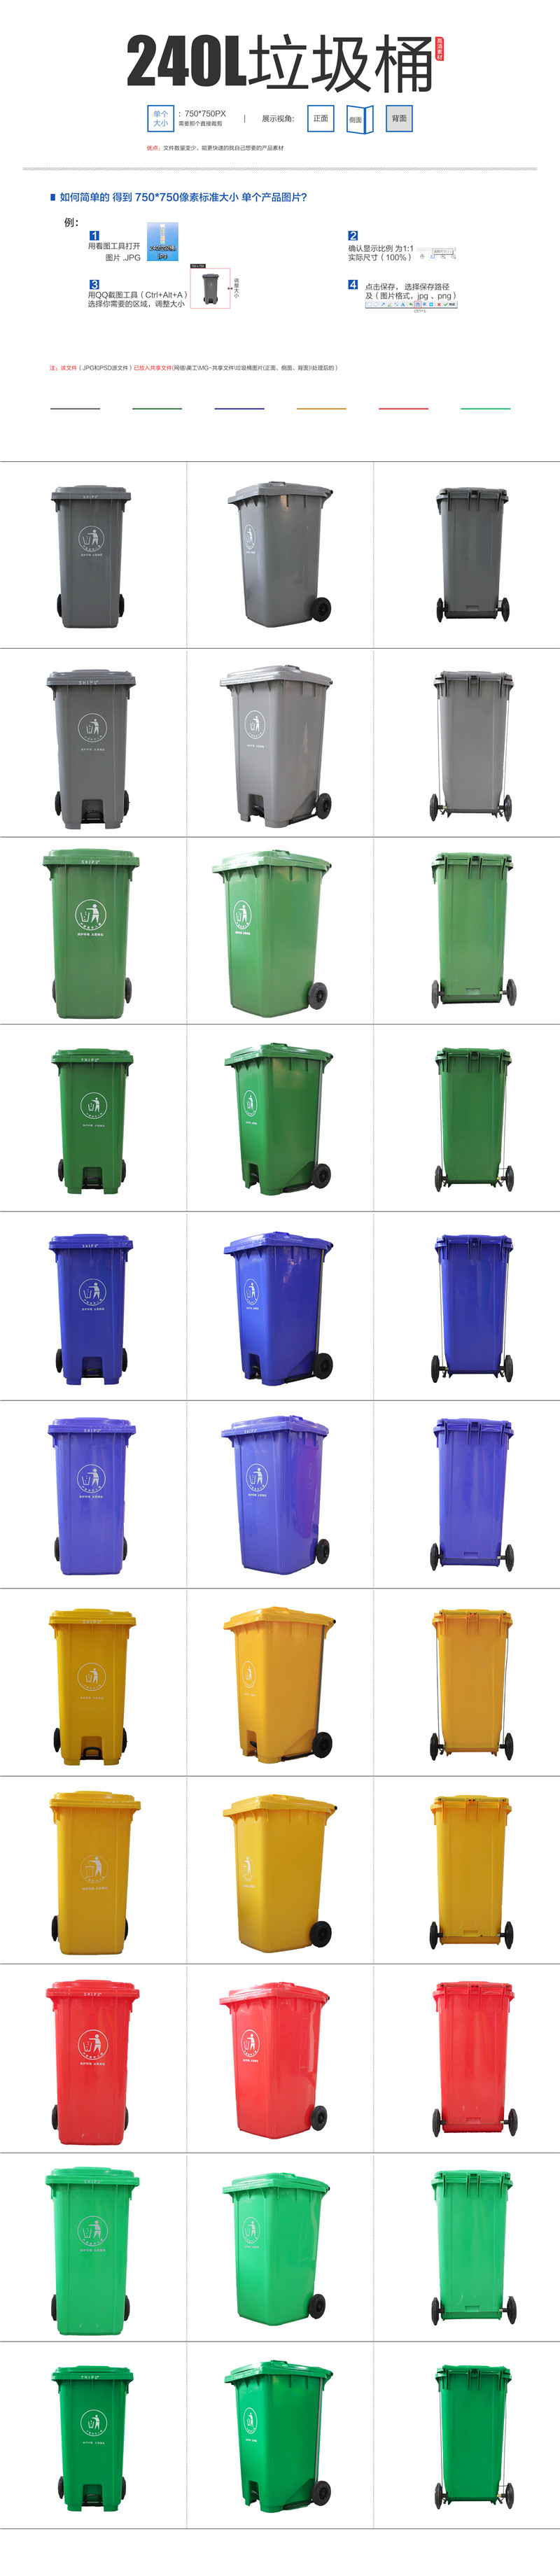 陕西咸阳长武垃圾分类四个垃圾桶颜色厂家价格